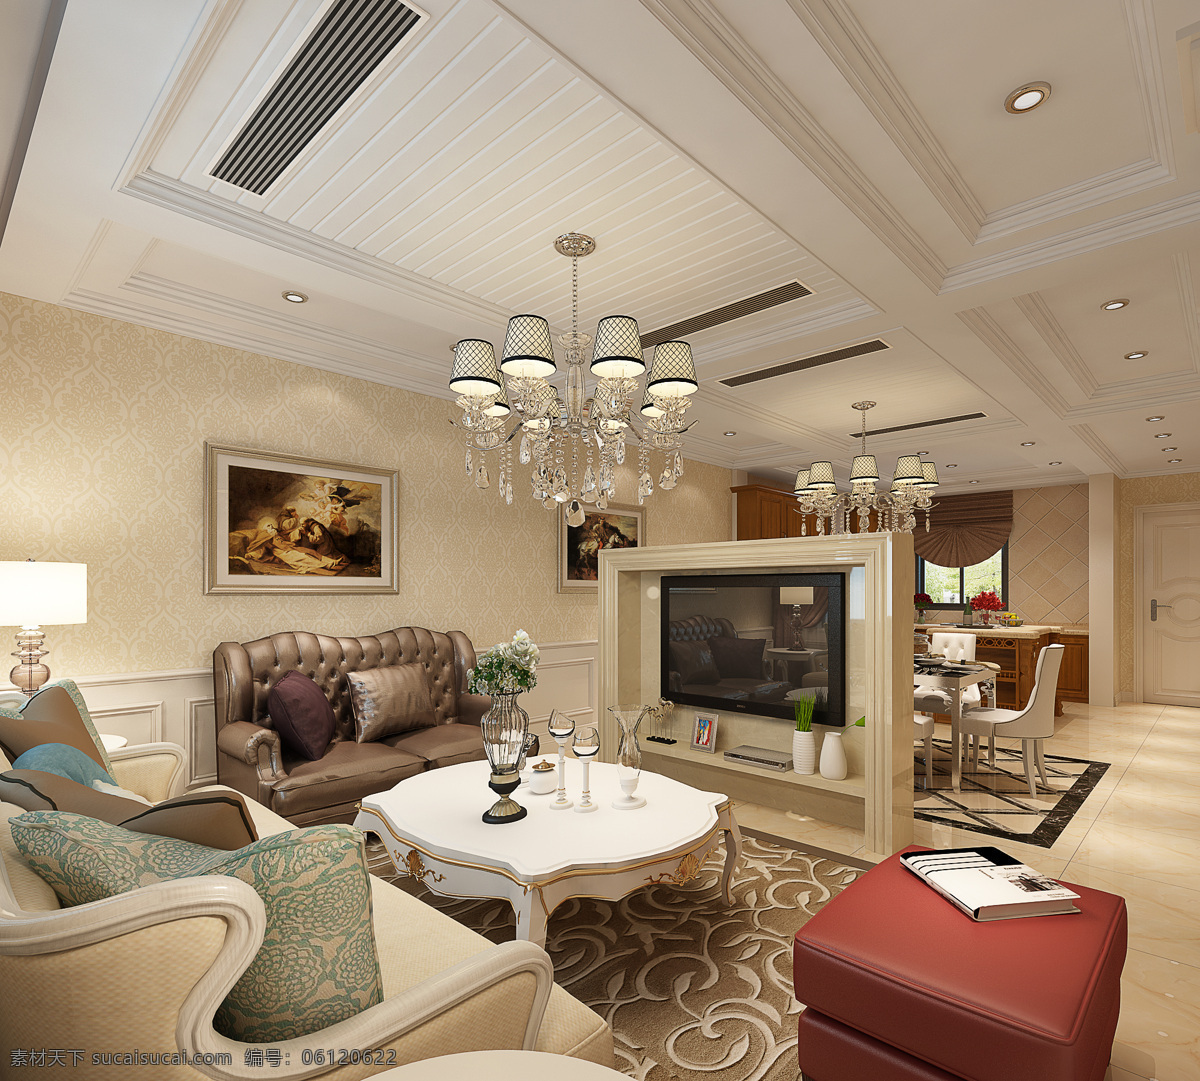 美式风格客厅 美式客厅 美式客厅设计 美式客厅装修 美式客厅空间 环境设计 室内设计